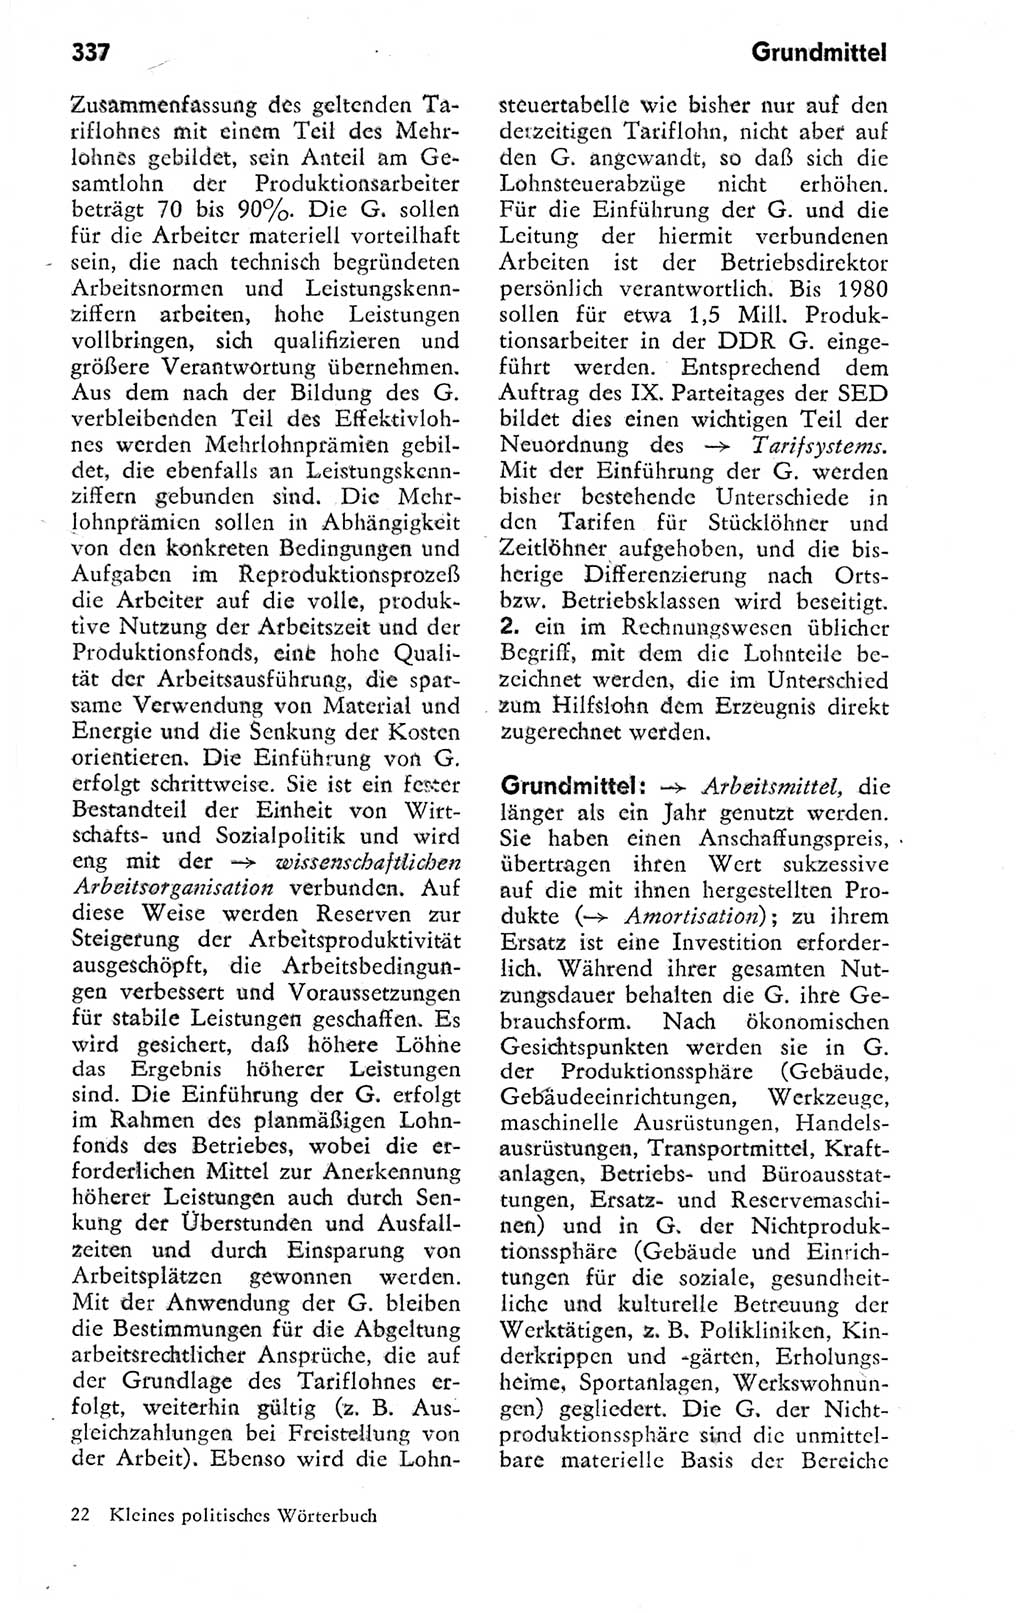 Kleines politisches Wörterbuch [Deutsche Demokratische Republik (DDR)] 1978, Seite 337 (Kl. pol. Wb. DDR 1978, S. 337)